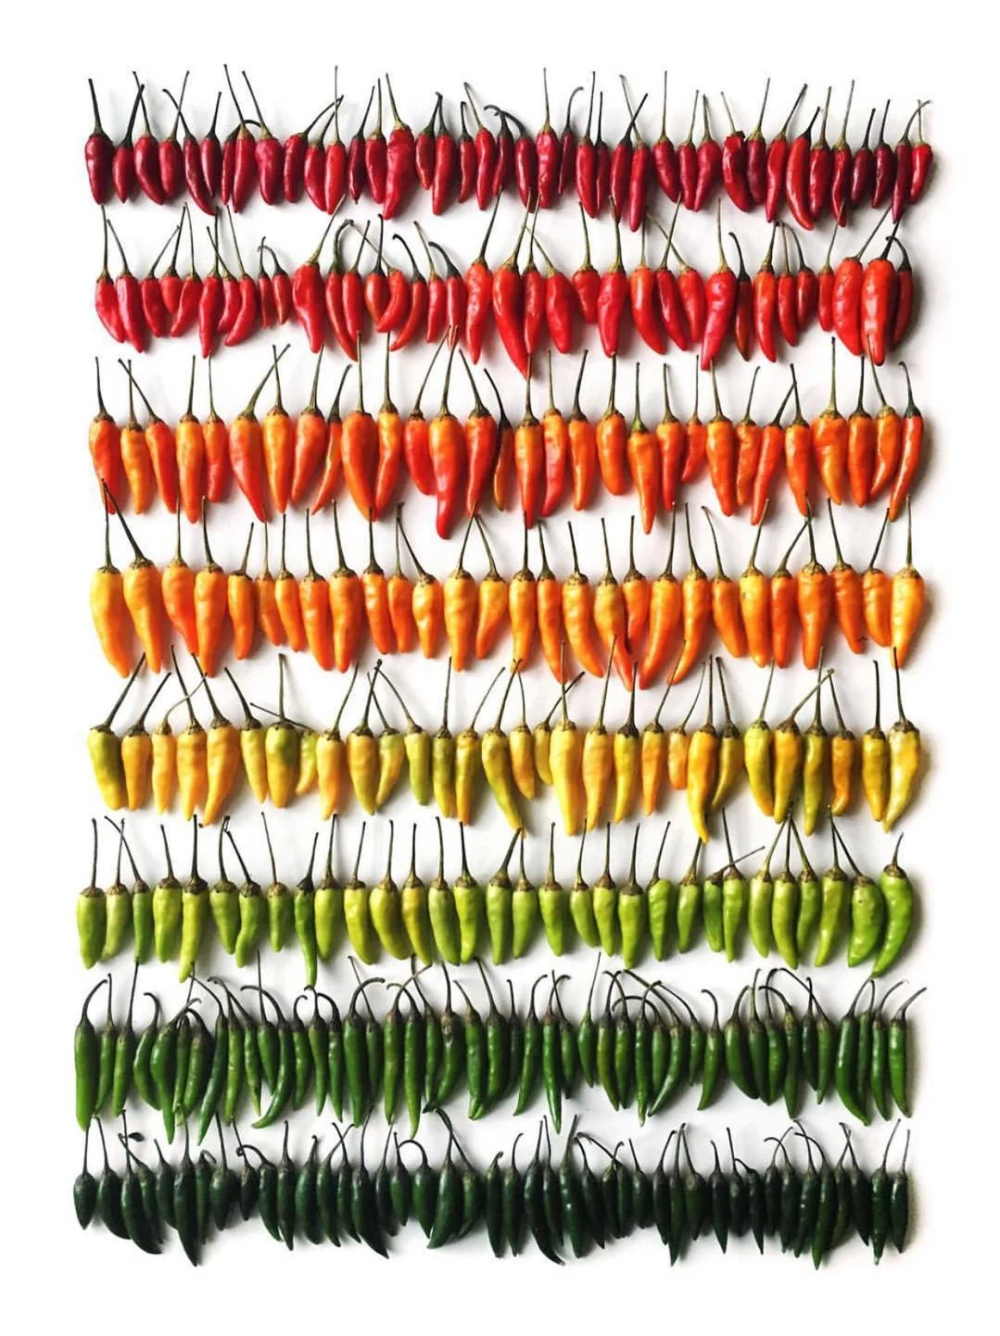 Brittany Wright 加拿大艺术家
她认为食物是一种艺术，专注于饮食文化和美学，通过食材丰富的色彩和形状展示食物的美丽。
